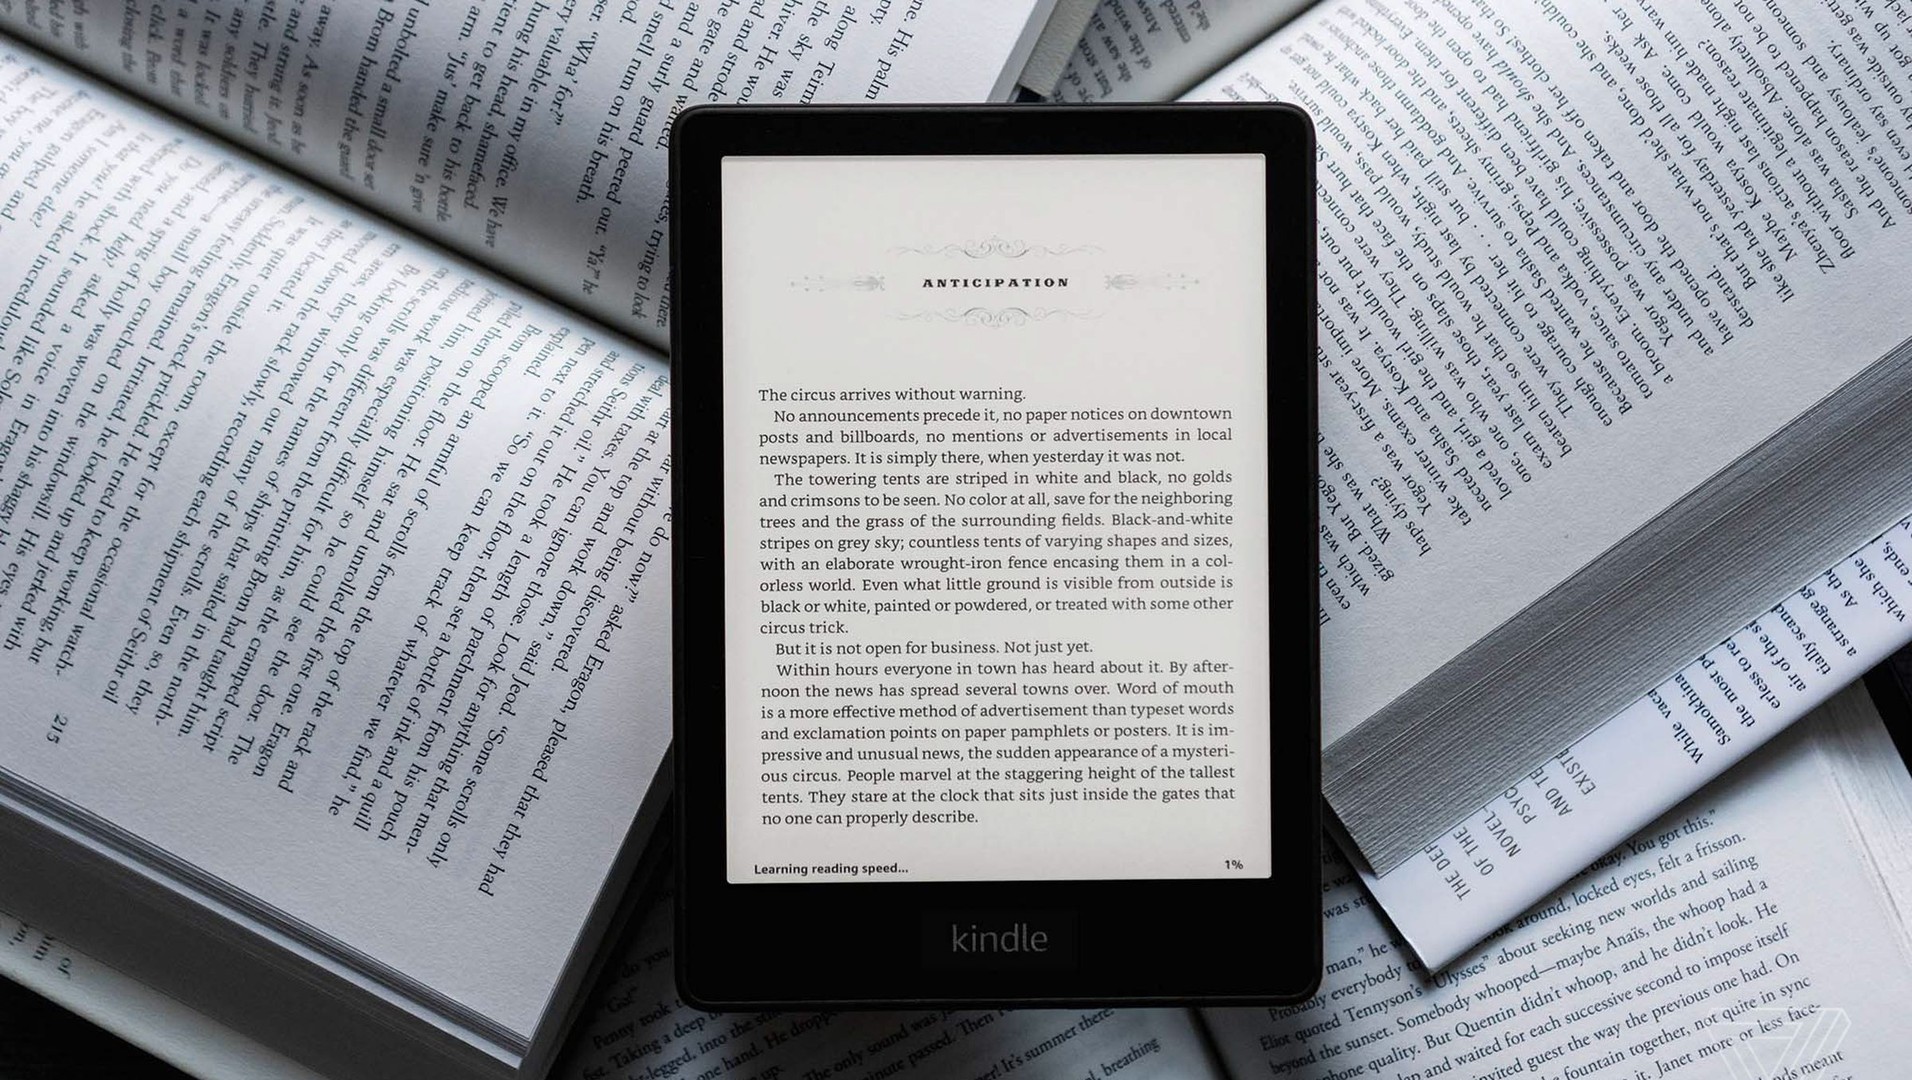 celulares y tabletas - Amazon Kindle 16GB para leer libros 2